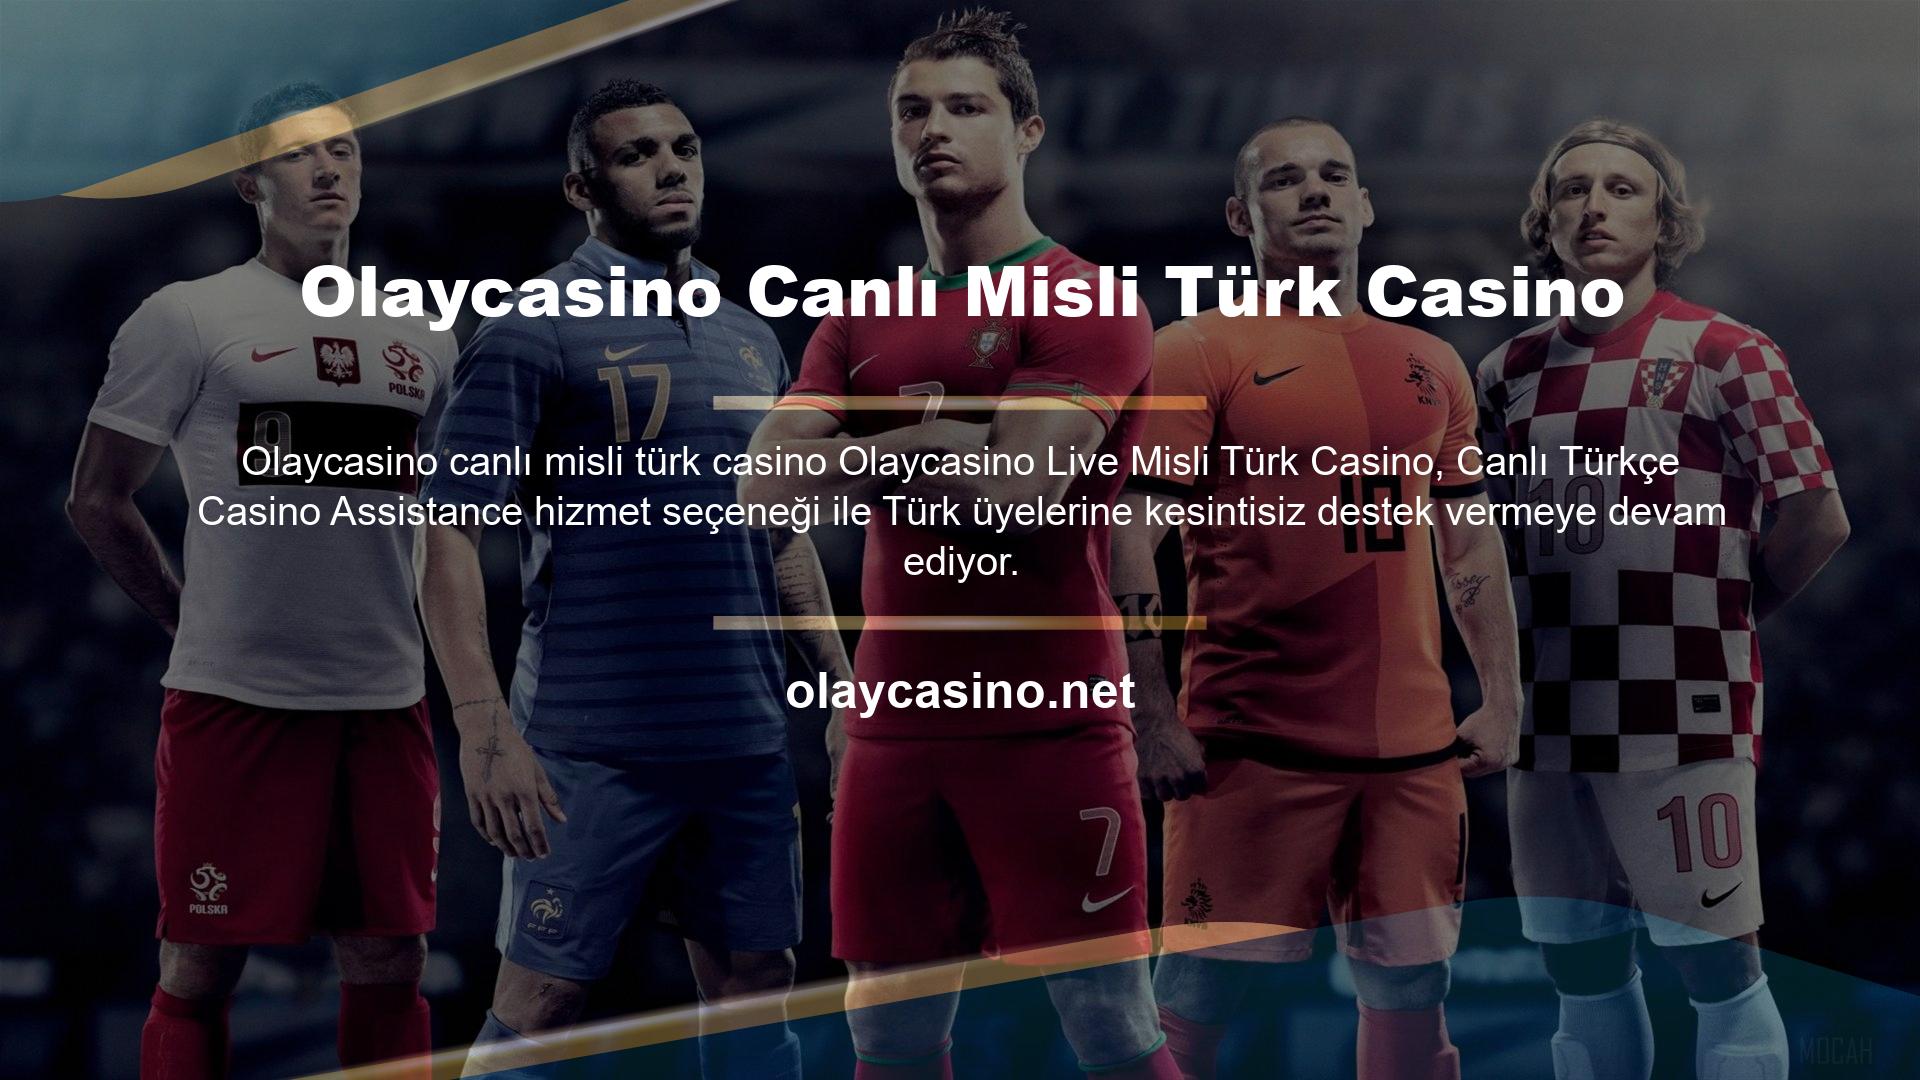 Olaycasino oyun sitesi en iyi casino oyunları seçimi için Türkçe olarak tam destek hizmeti vermekte ve üyelerinin çeşitli sorunlarına anında çözüm bulabilmektedir